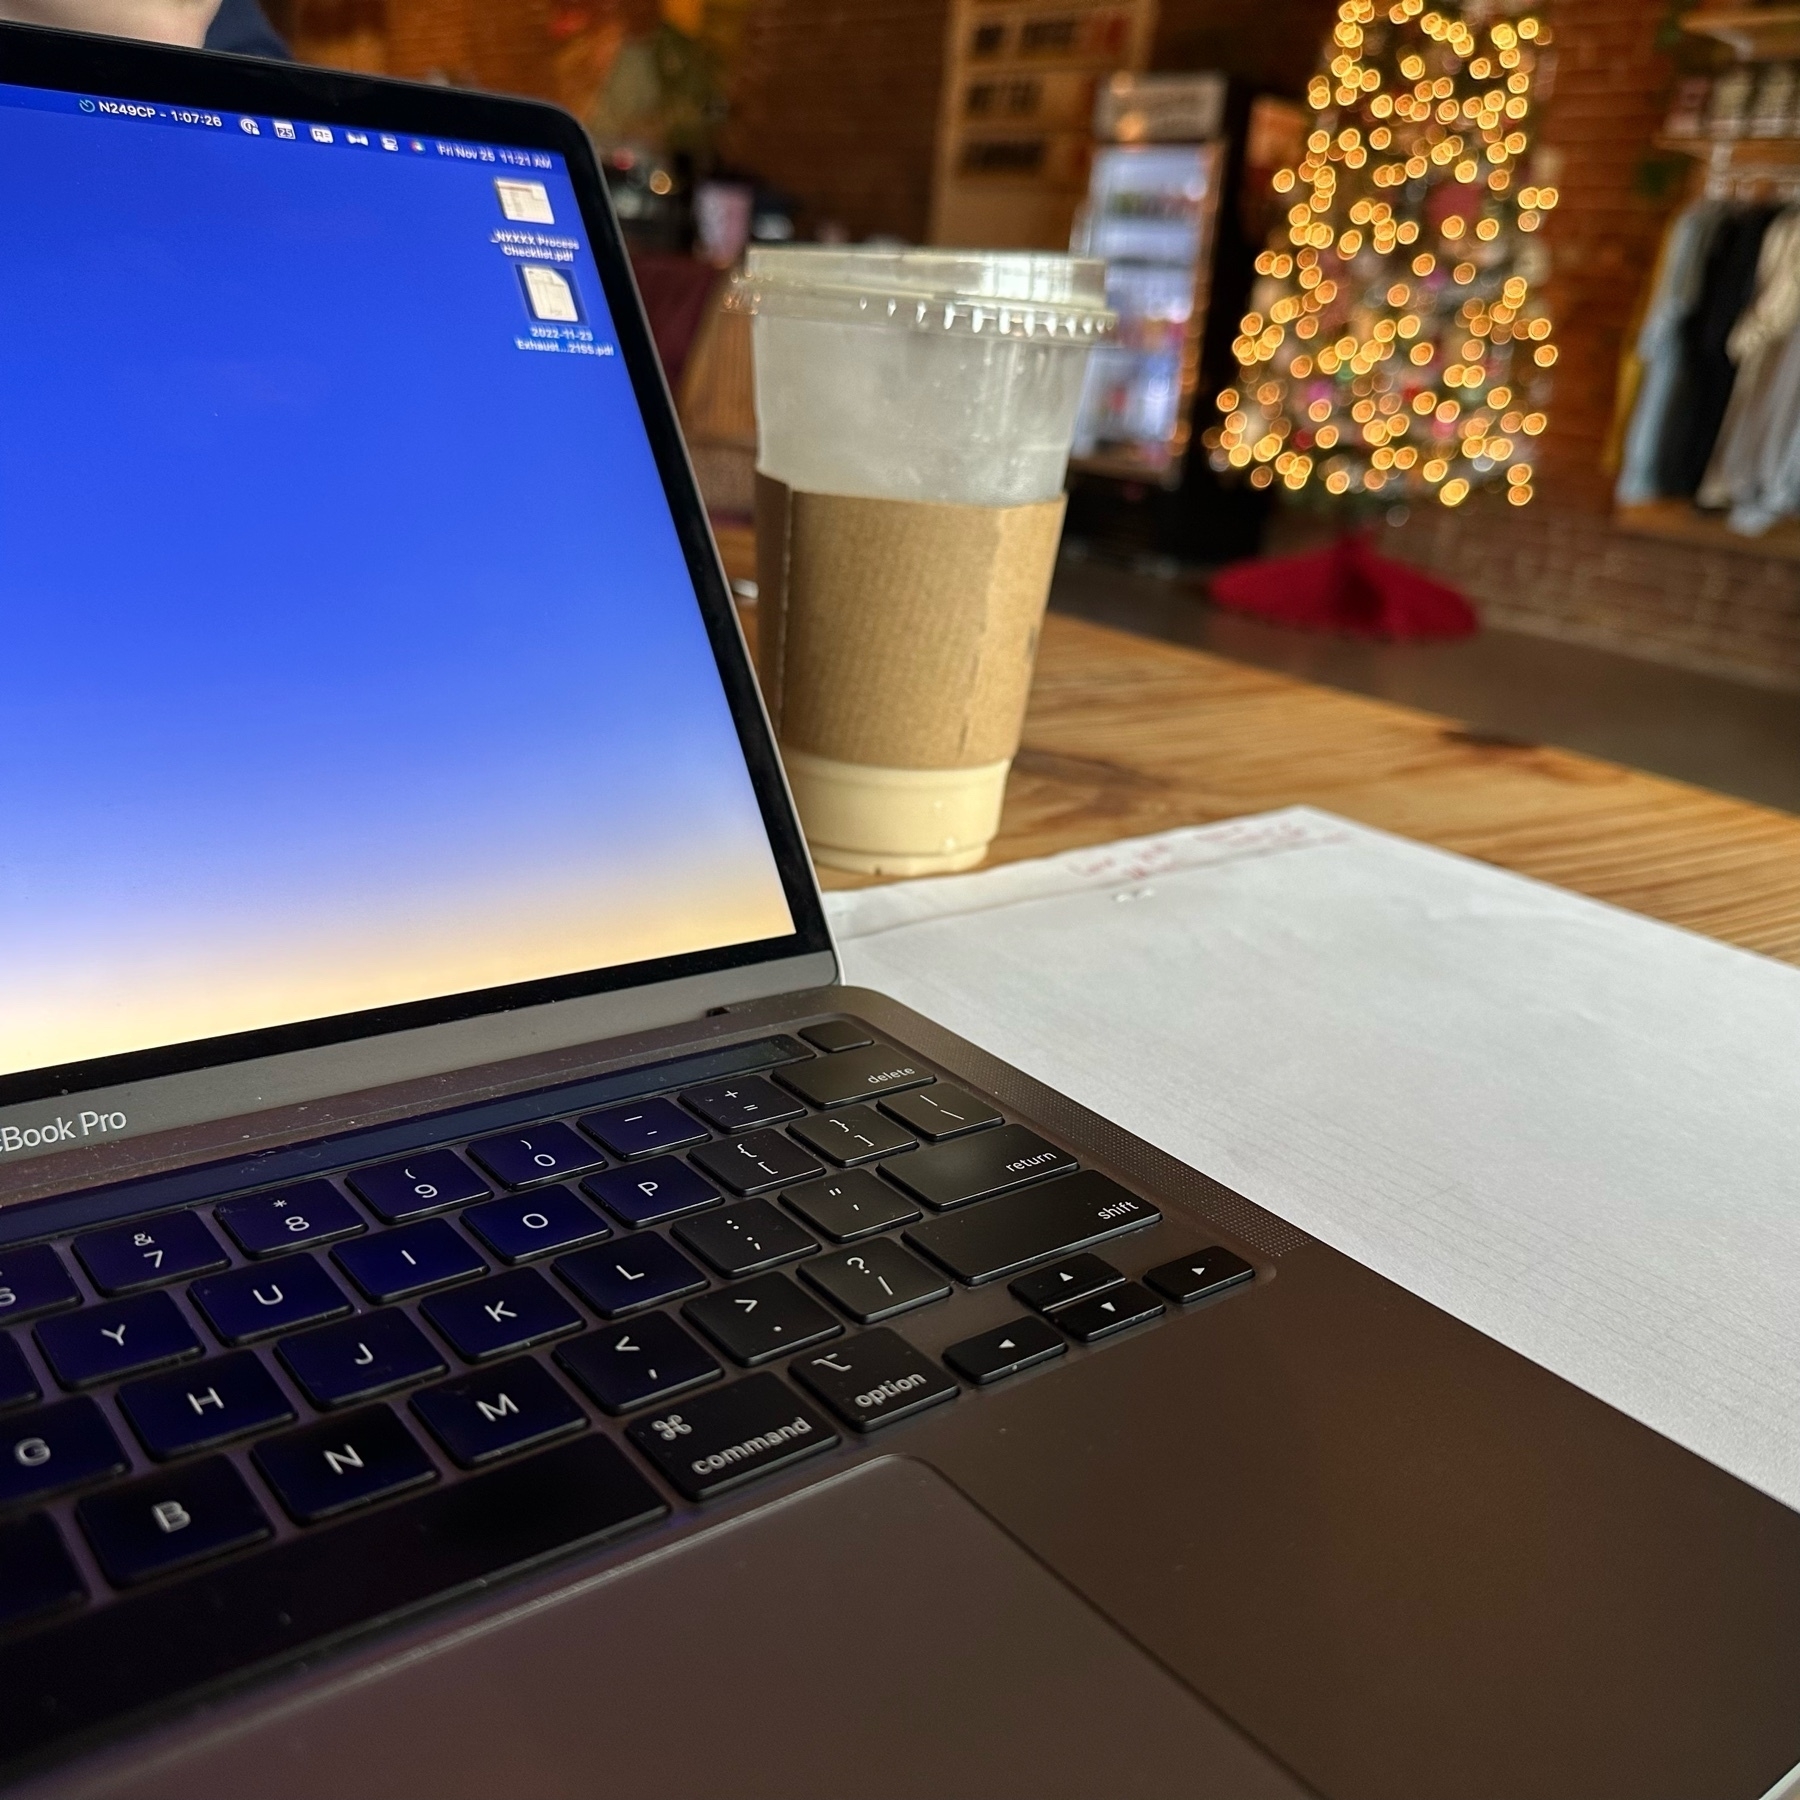 Laptop, coffee, Christmas tree. 